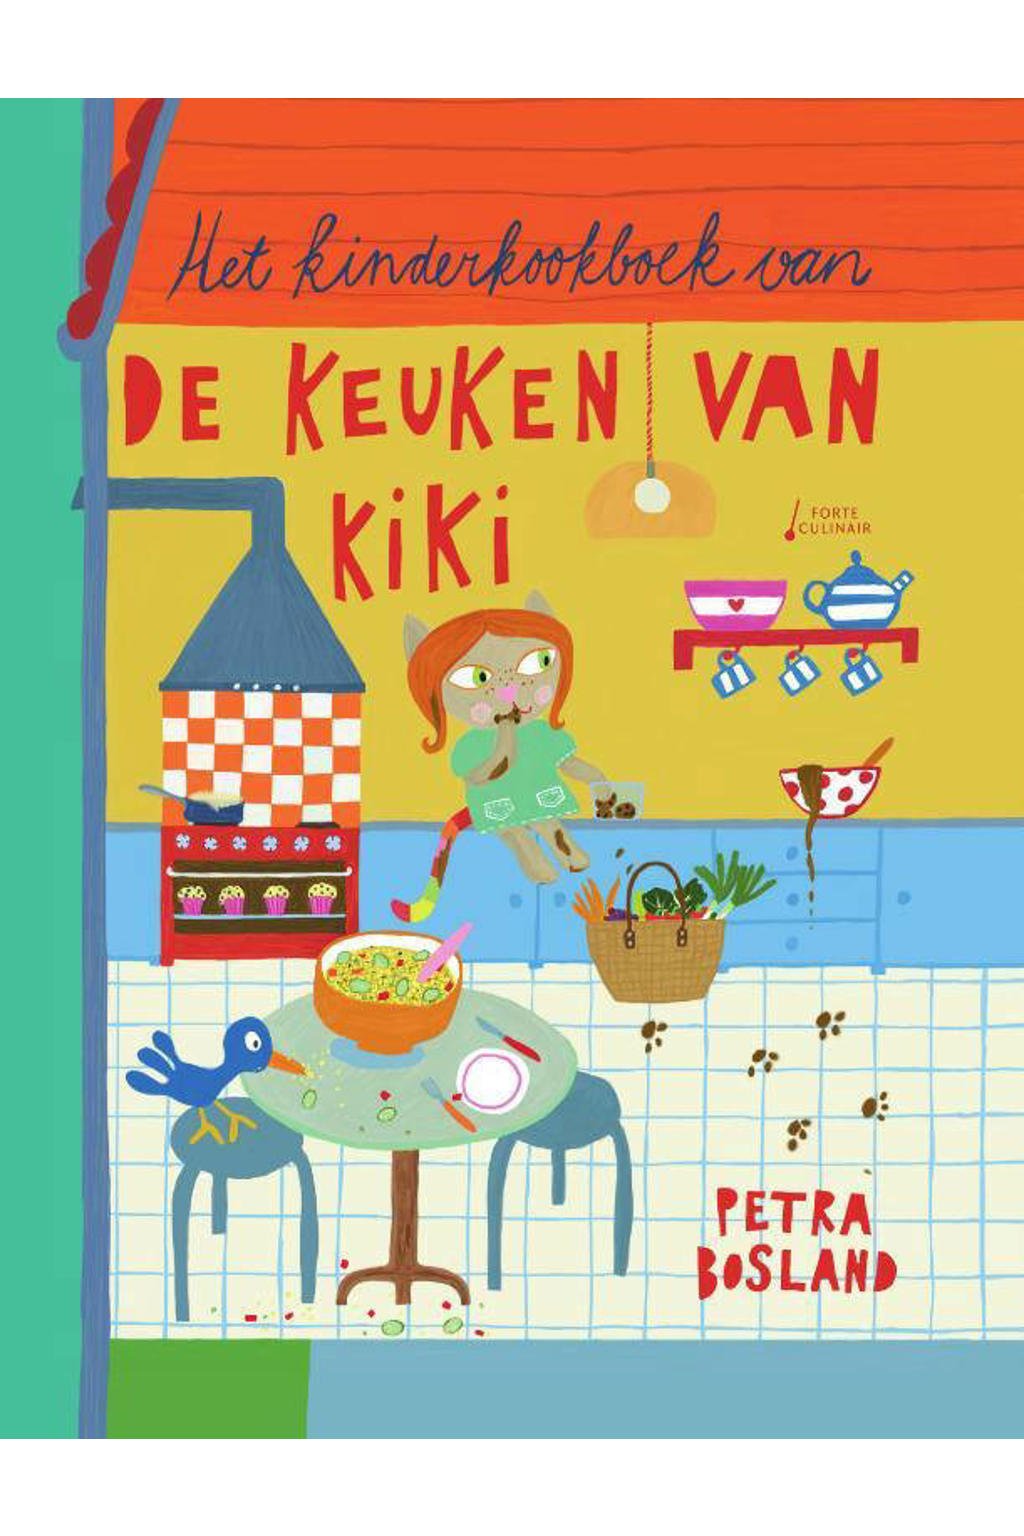 De keuken van Kiki: Het kinderkookboek van de keuken van Kiki - Petra Bosland